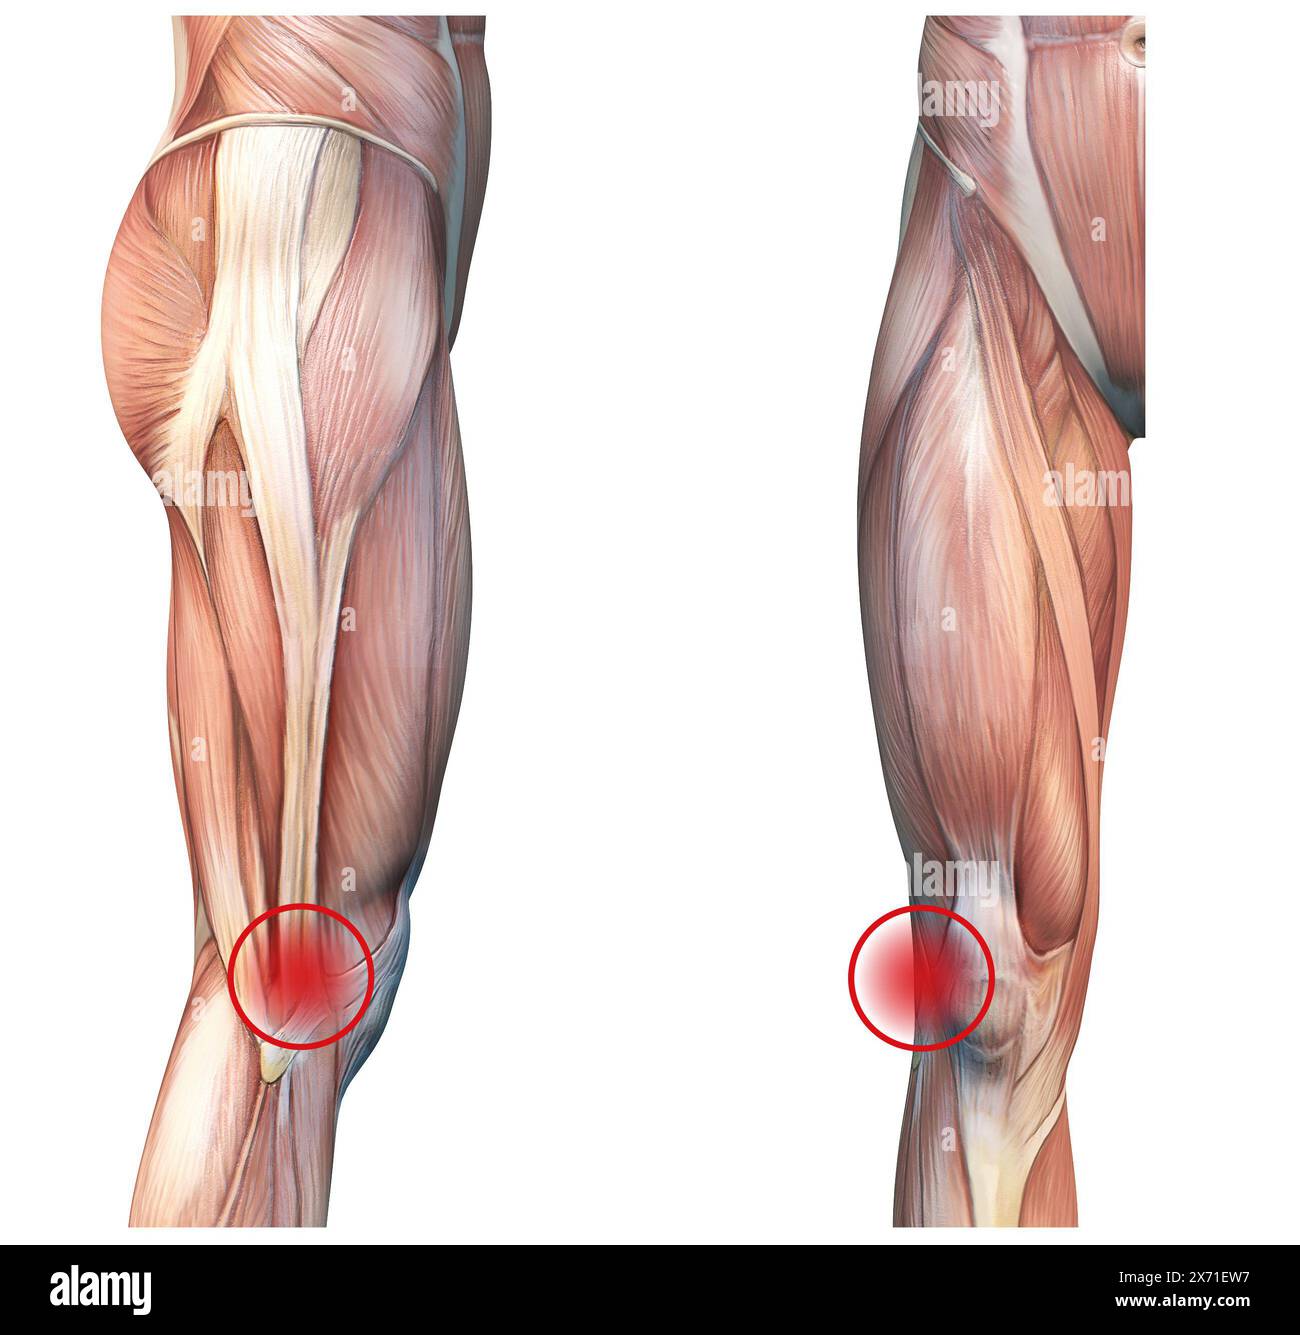 Sindrome della banda iliotibiale: Condizione del ginocchio che causa dolore all'esterno del ginocchio a causa di infiammazione o uso eccessivo Foto Stock